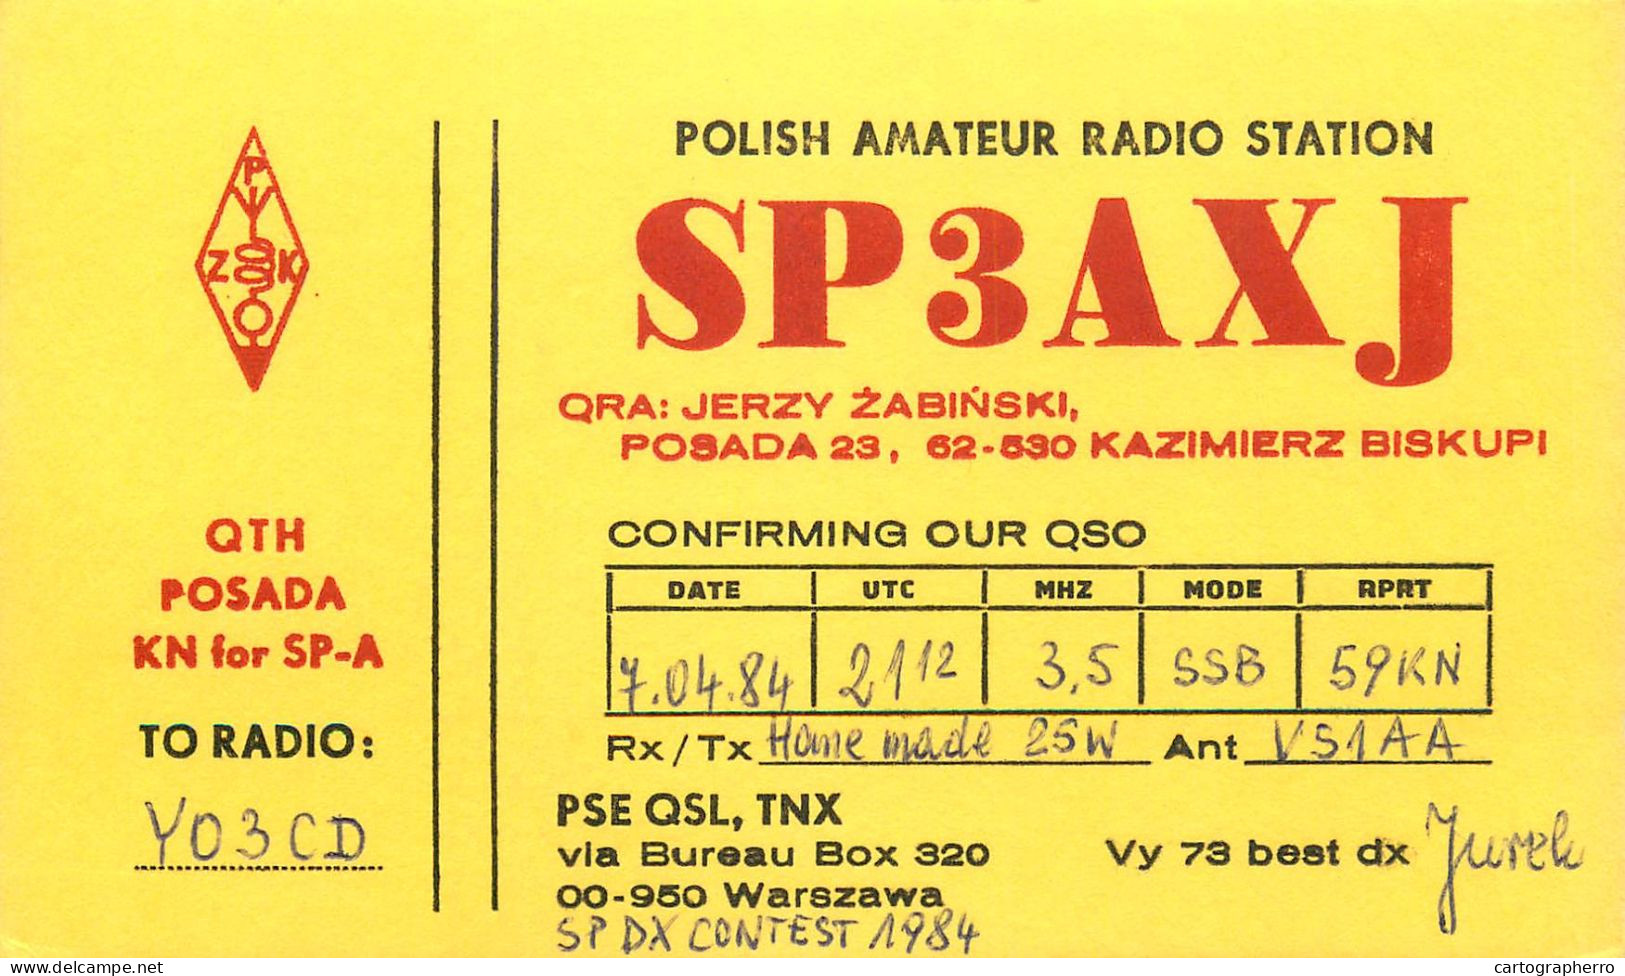 Polish Amateur Radio Station QSL Card Poland Y03CD SP3AXJ - Radio Amateur